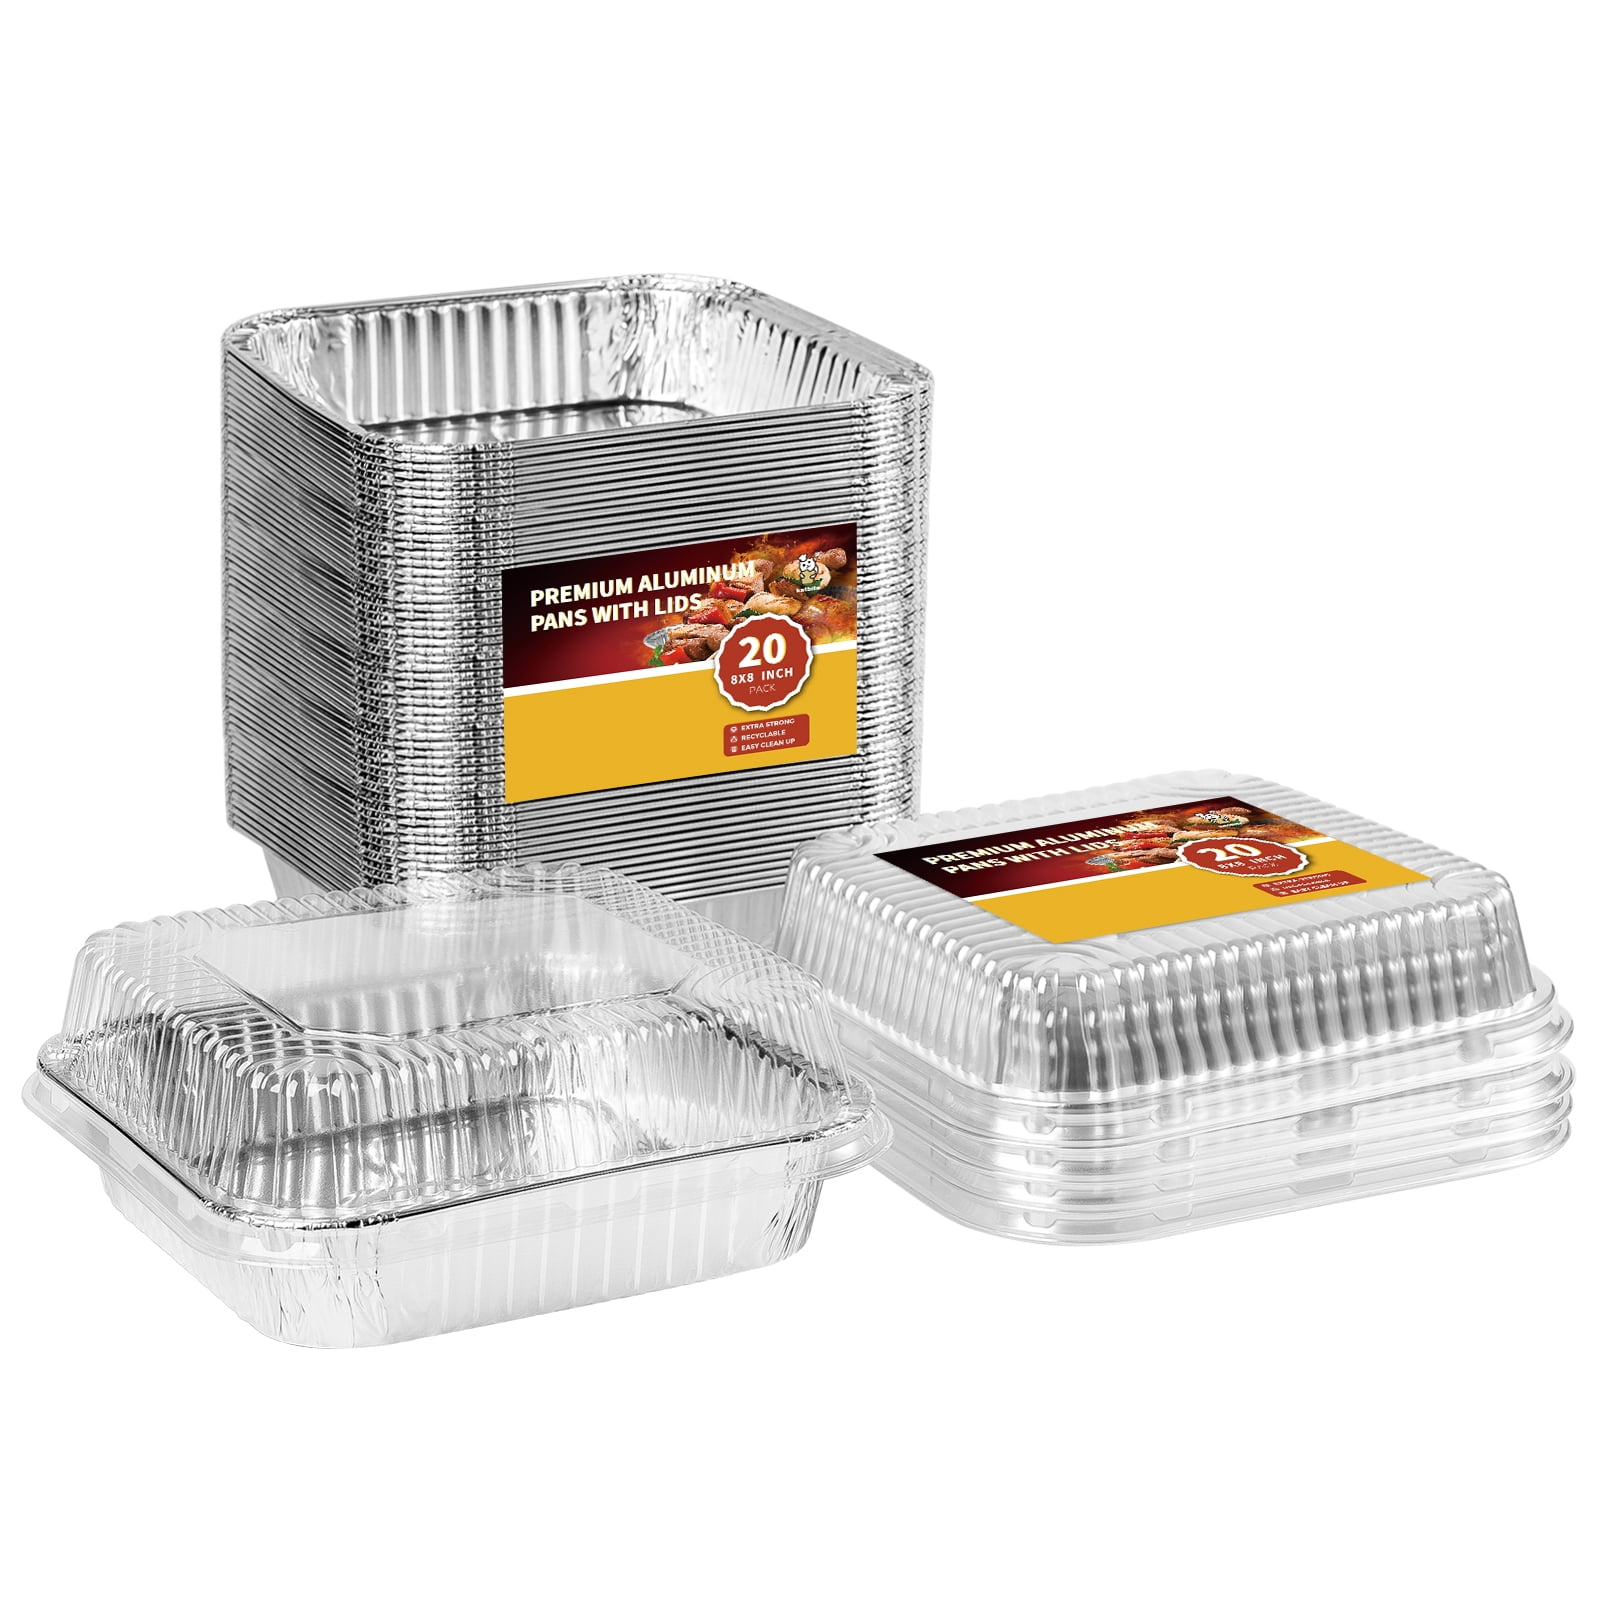 katbite 9x13 Aluminum Pans With Lids, 25 Packs Disposable Baking Pans